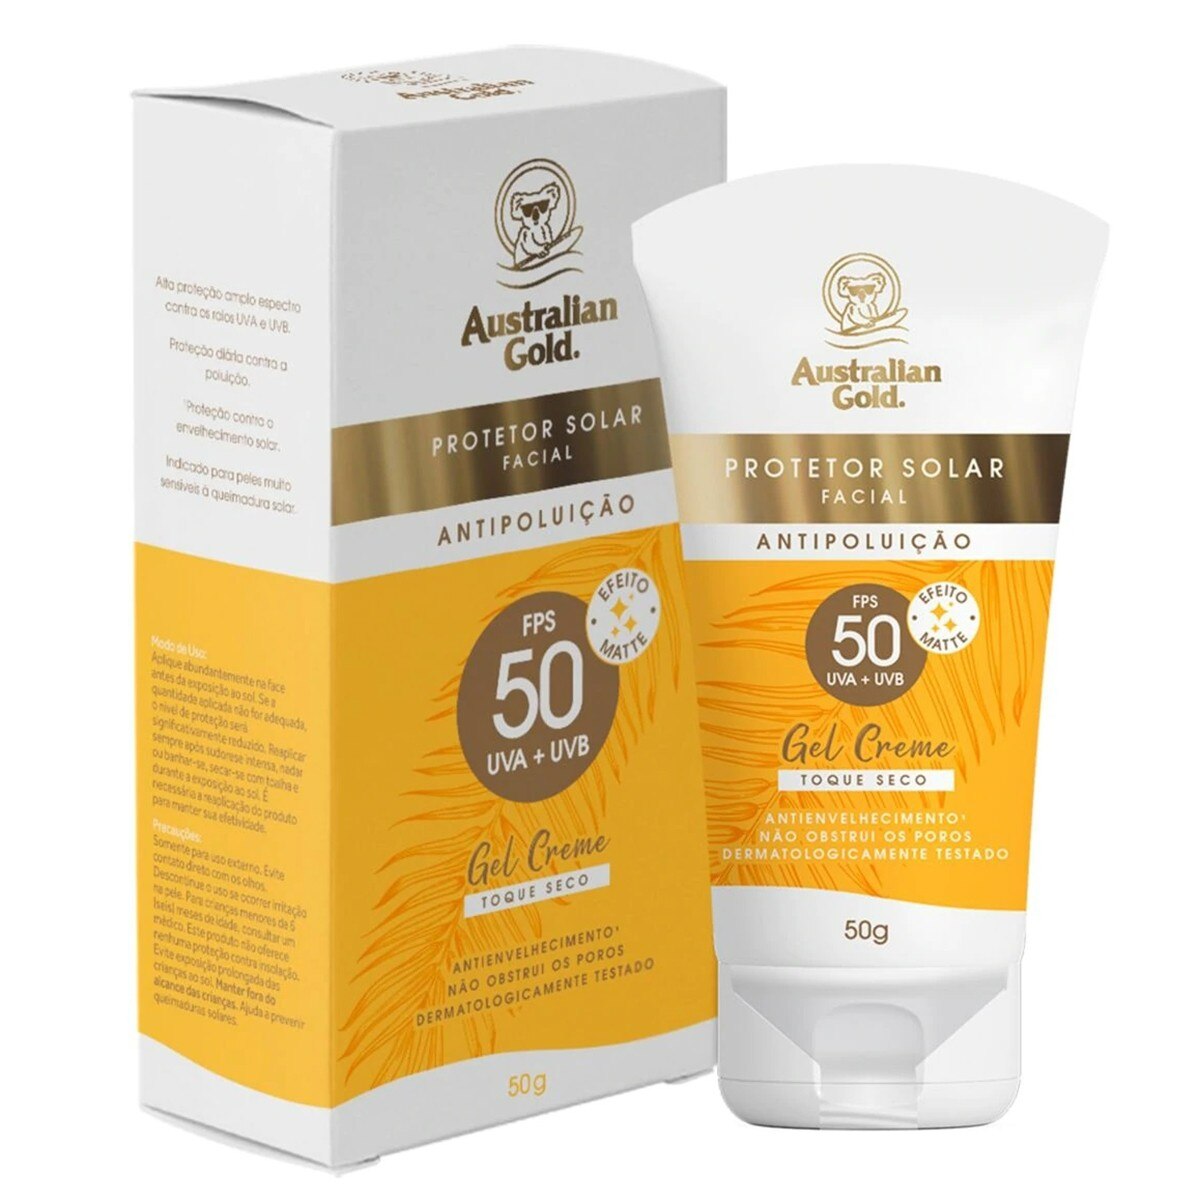 Protetor Solar Facial Australian Gold FPS50 Antipoluicao Gel Creme 50g